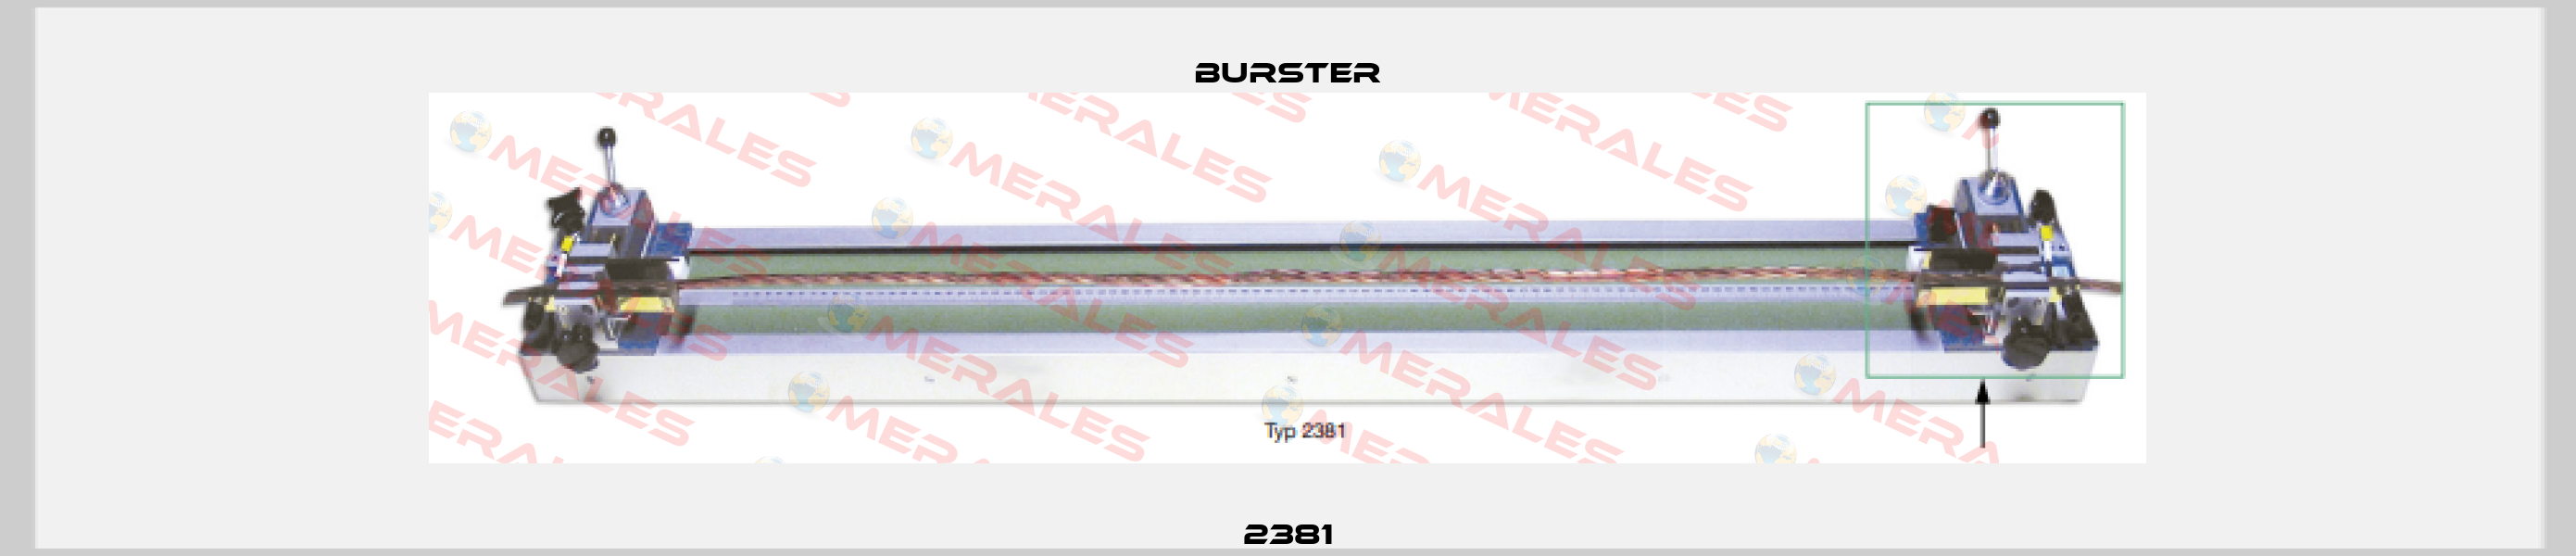 2381 Burster